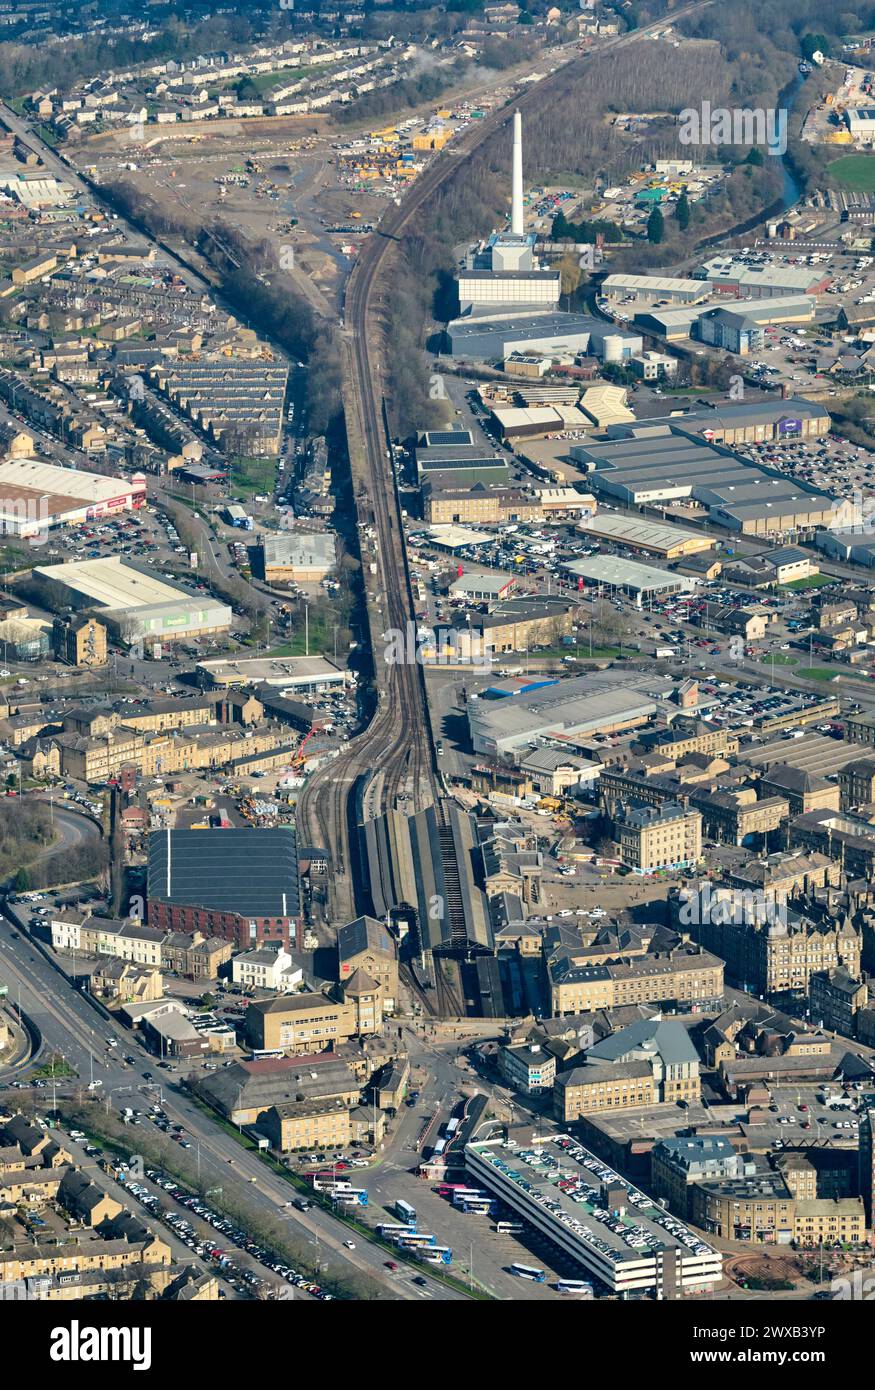 Vue aérienne de la ville industrielle de Huddersfield, Yorkshire de l'ouest, Angleterre du nord, Royaume-Uni, montrant la ligne de chemin de fer TRANS pennine et la gare Banque D'Images